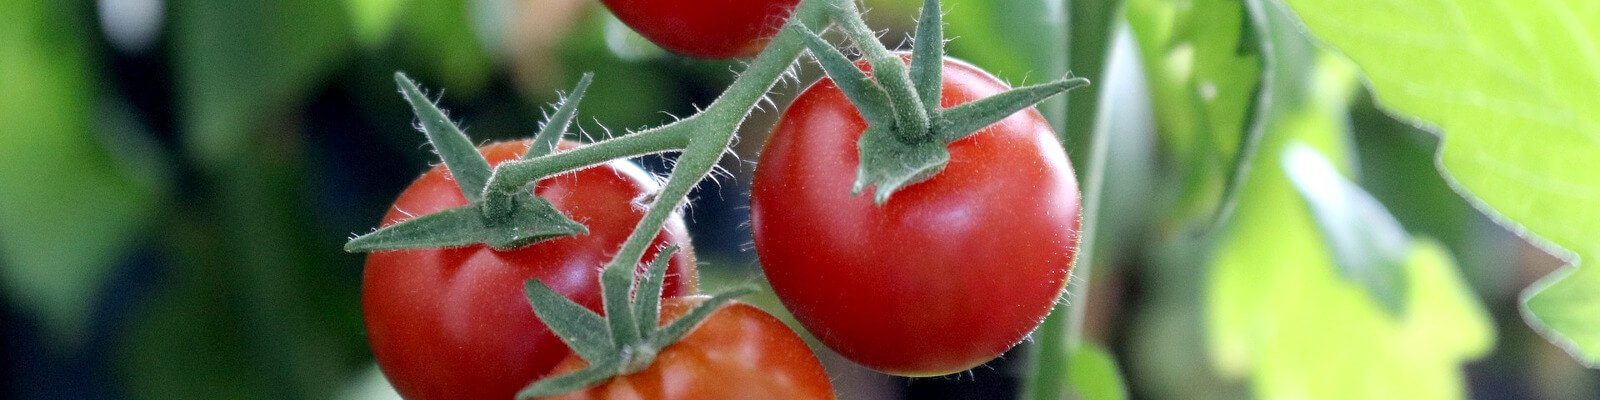 Tomaten düngen leicht gemacht: Infos und Tipps vom Profi